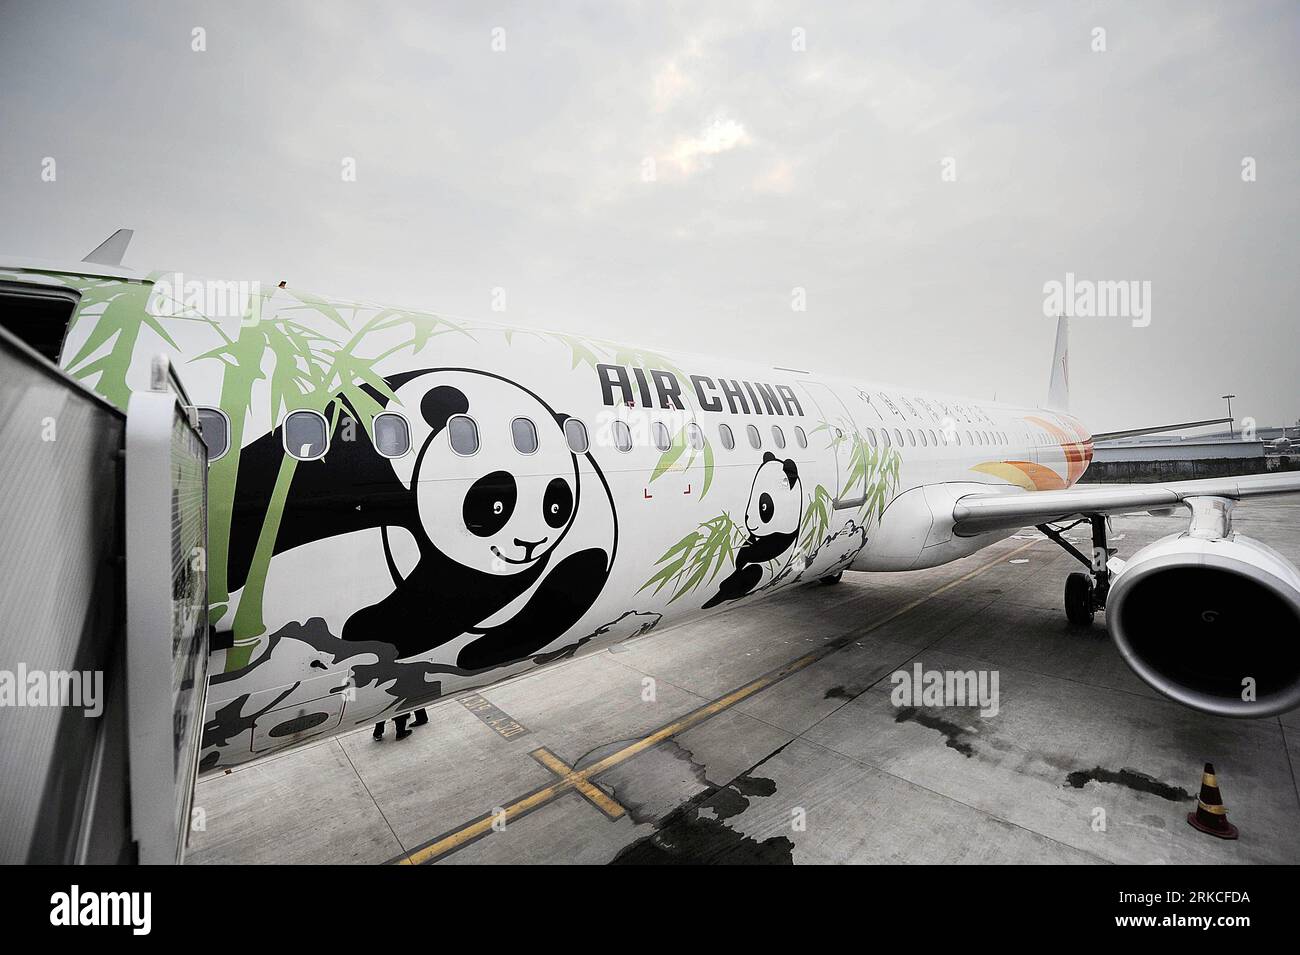 Bildnummer: 54759537 Datum: 18.12.2010 Copyright: Imago/Xinhua (101218) -- CHENGDU, 18 de diciembre de 2010 (Xinhua) -- Un avión con pinturas de pandas se prepara para transferir pandas gigantes Kai Kai y Xin Xin en el aeropuerto de Chengdu, provincia de Sichuan, suroeste de China, 18 de diciembre de 2010. La pareja de pandas Kai Kai y Xin Xin, regalada a Macao por el gobierno central de China, partió de Chengdu para Macao el sábado. (Xinhua/Li Qiaoqiao) (wxy) CHINA-CHENGDU-MACAO-PANDA PAIR (CN) PUBLICATIONxNOTxINxCHN Perfil de seguridad Panda Transporte de tiertransporte de tierTransporte de tiertransporte de tiertransporte de tiertransporte de tiertransporte de tiertransporte de la rueda xmk 2010 quer O0 Número de archivo 54759537 Foto de stock